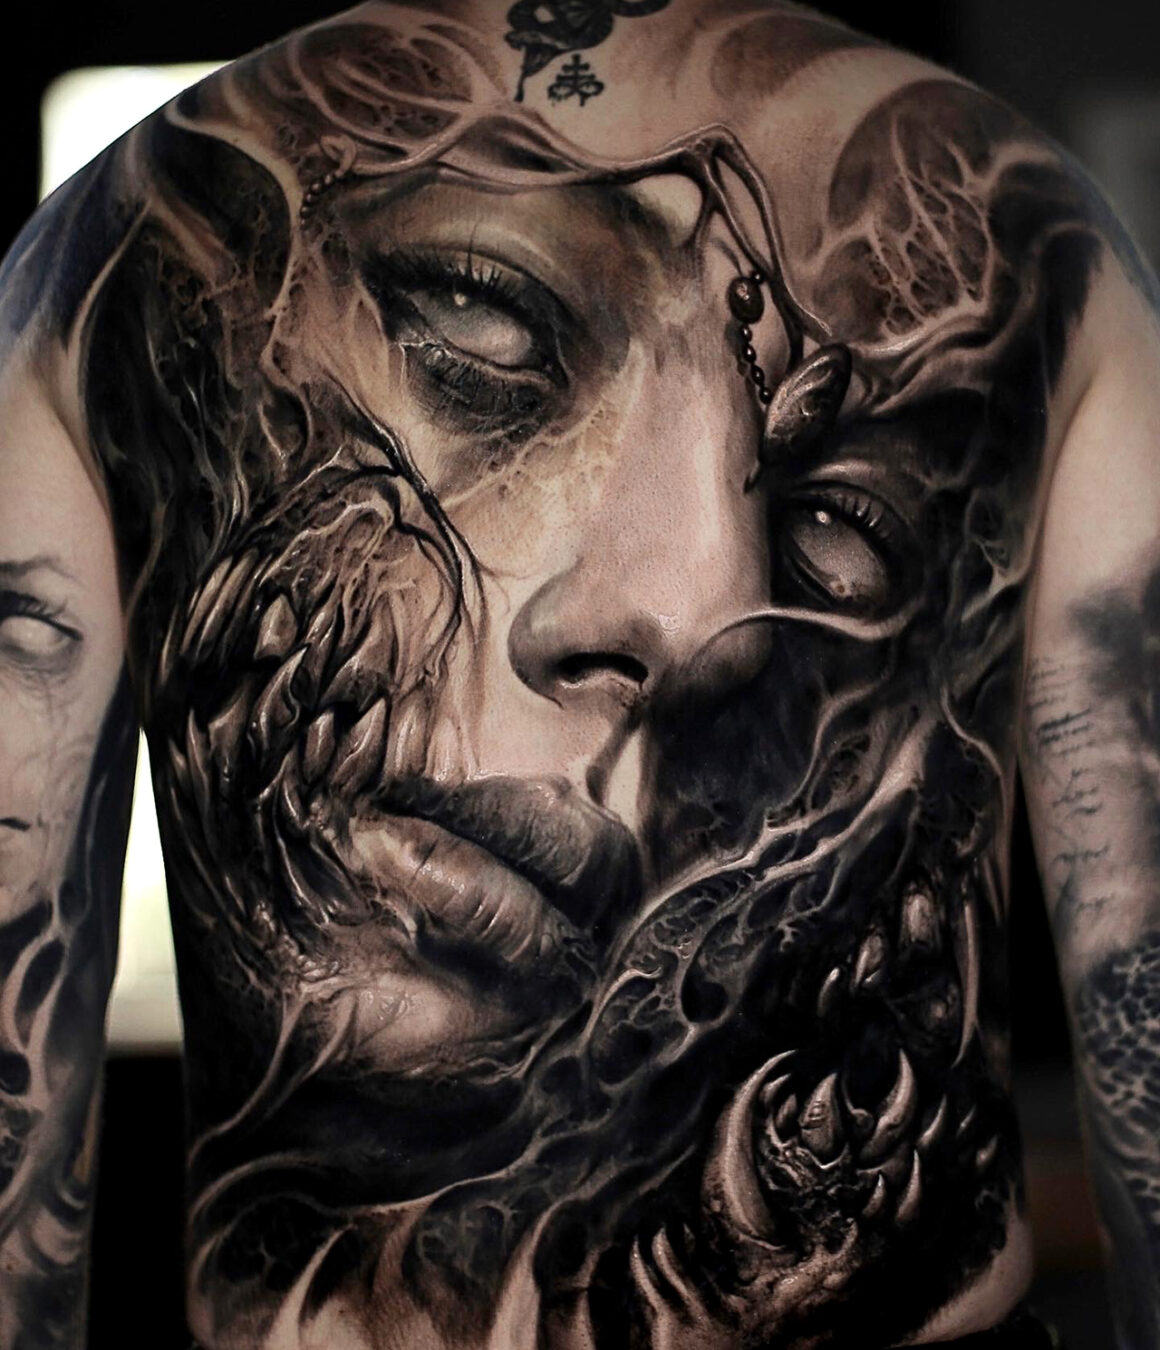 Tattoo by David Joquera